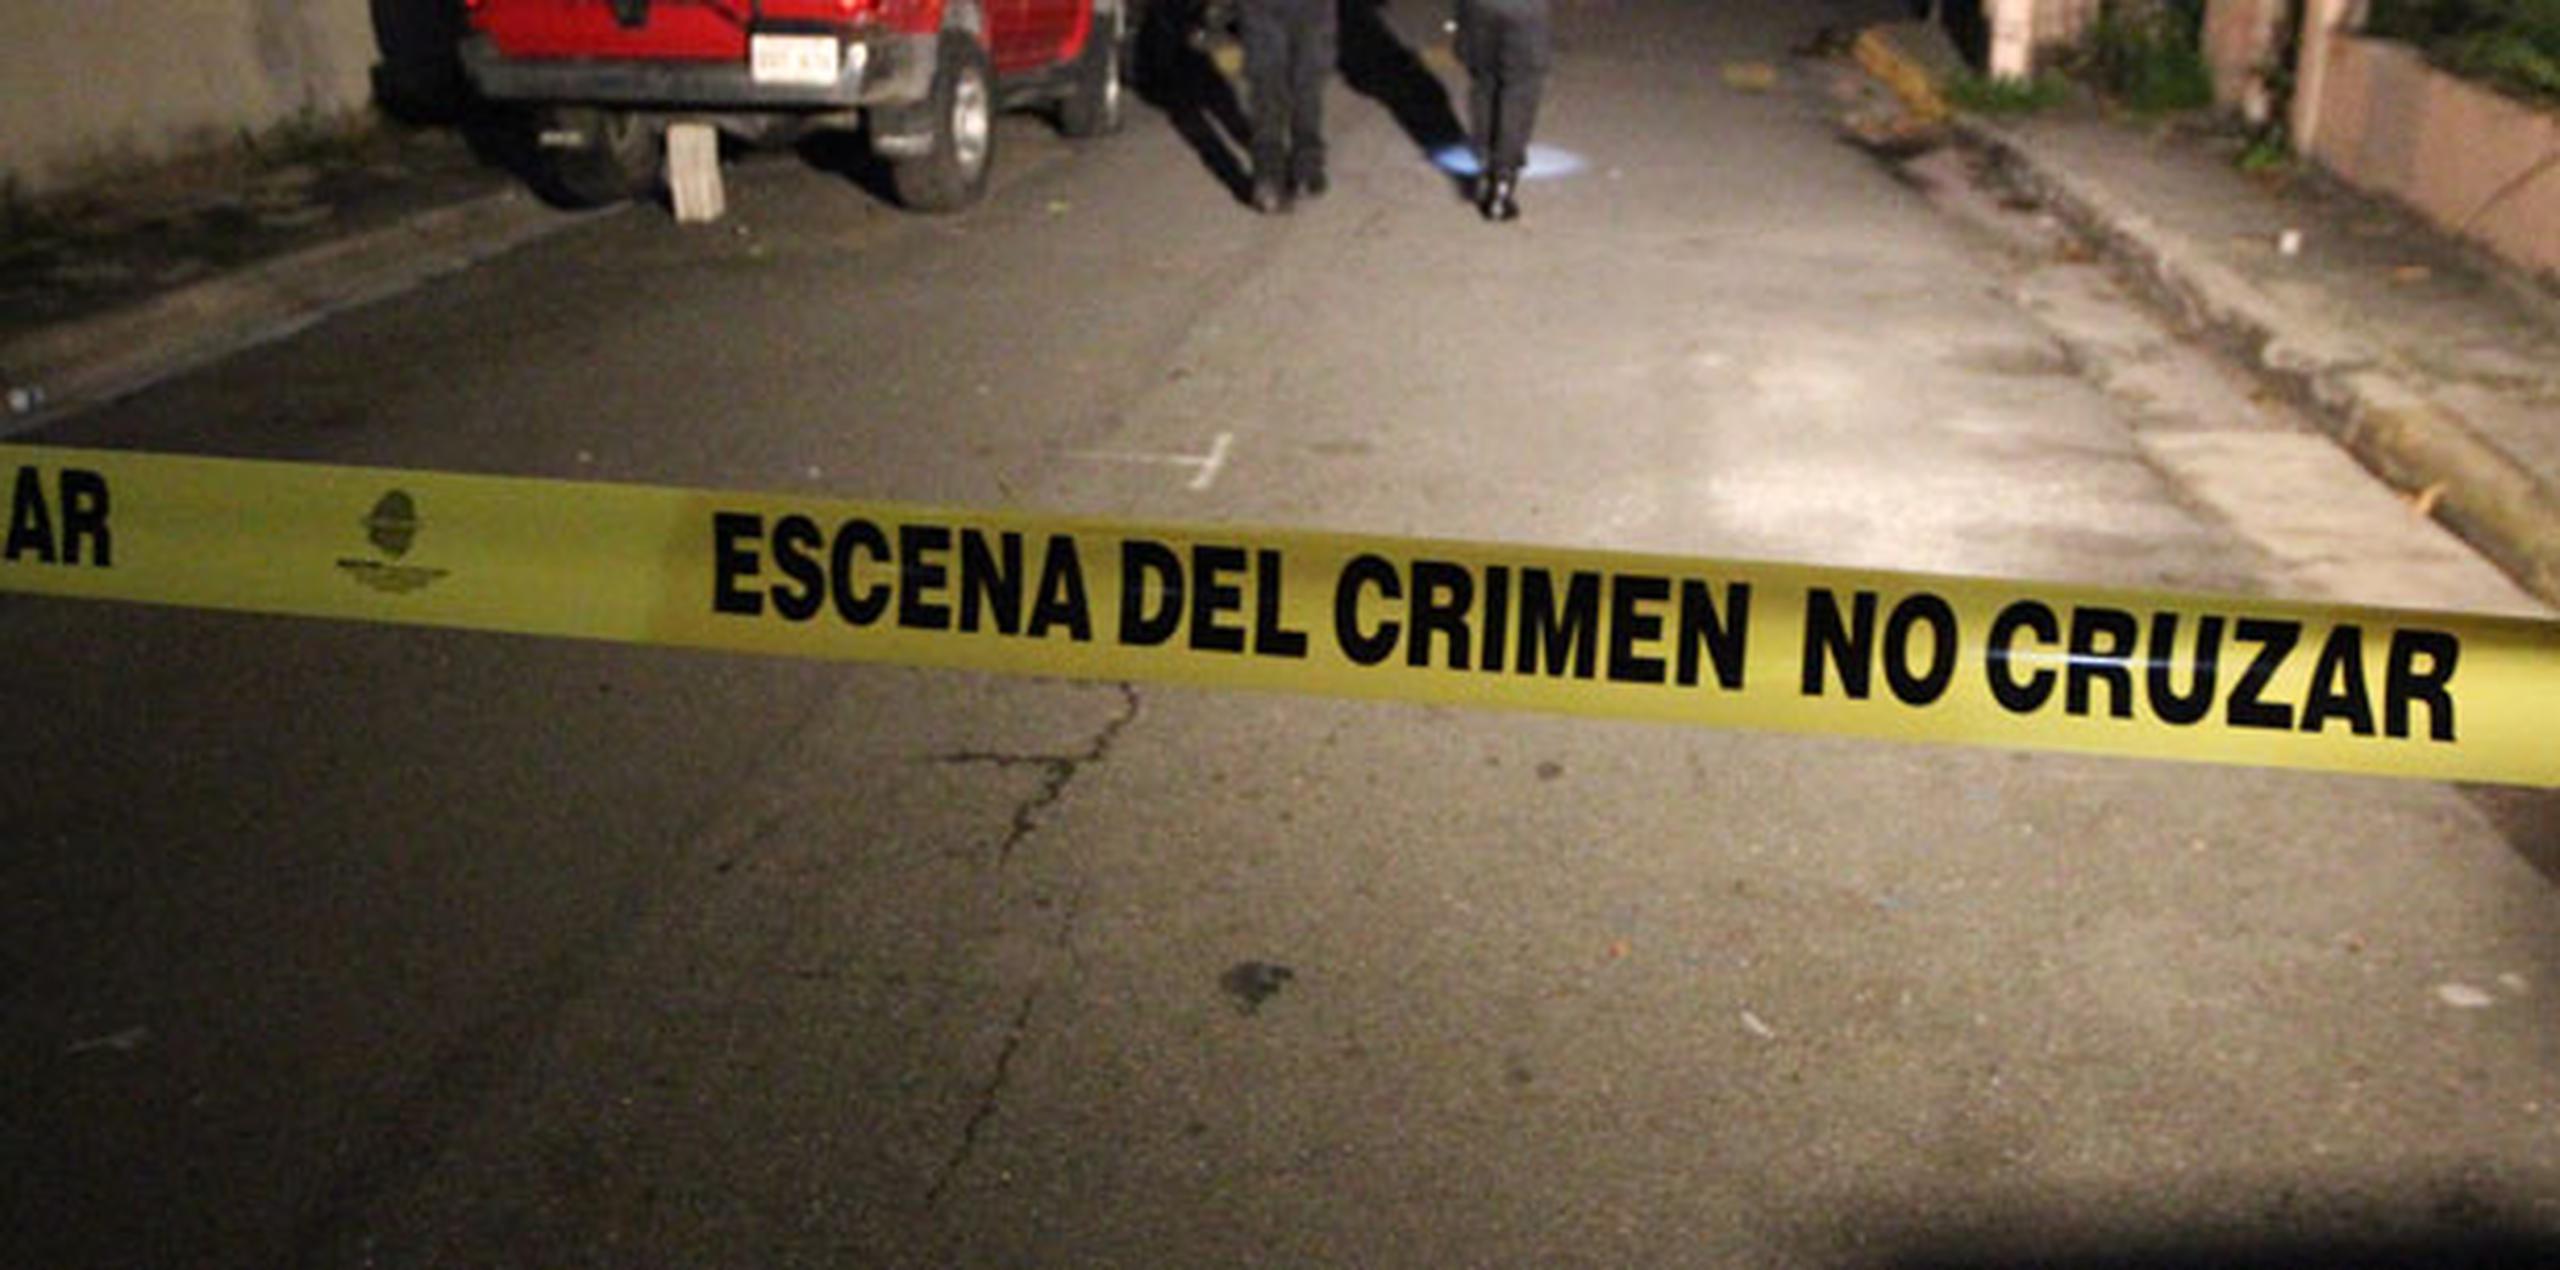 Agentes de la División de Homicidios del CIC de San Juan, en unión al fiscal de turno, se encuentran en la escena iniciando la investigación. (Archivo)